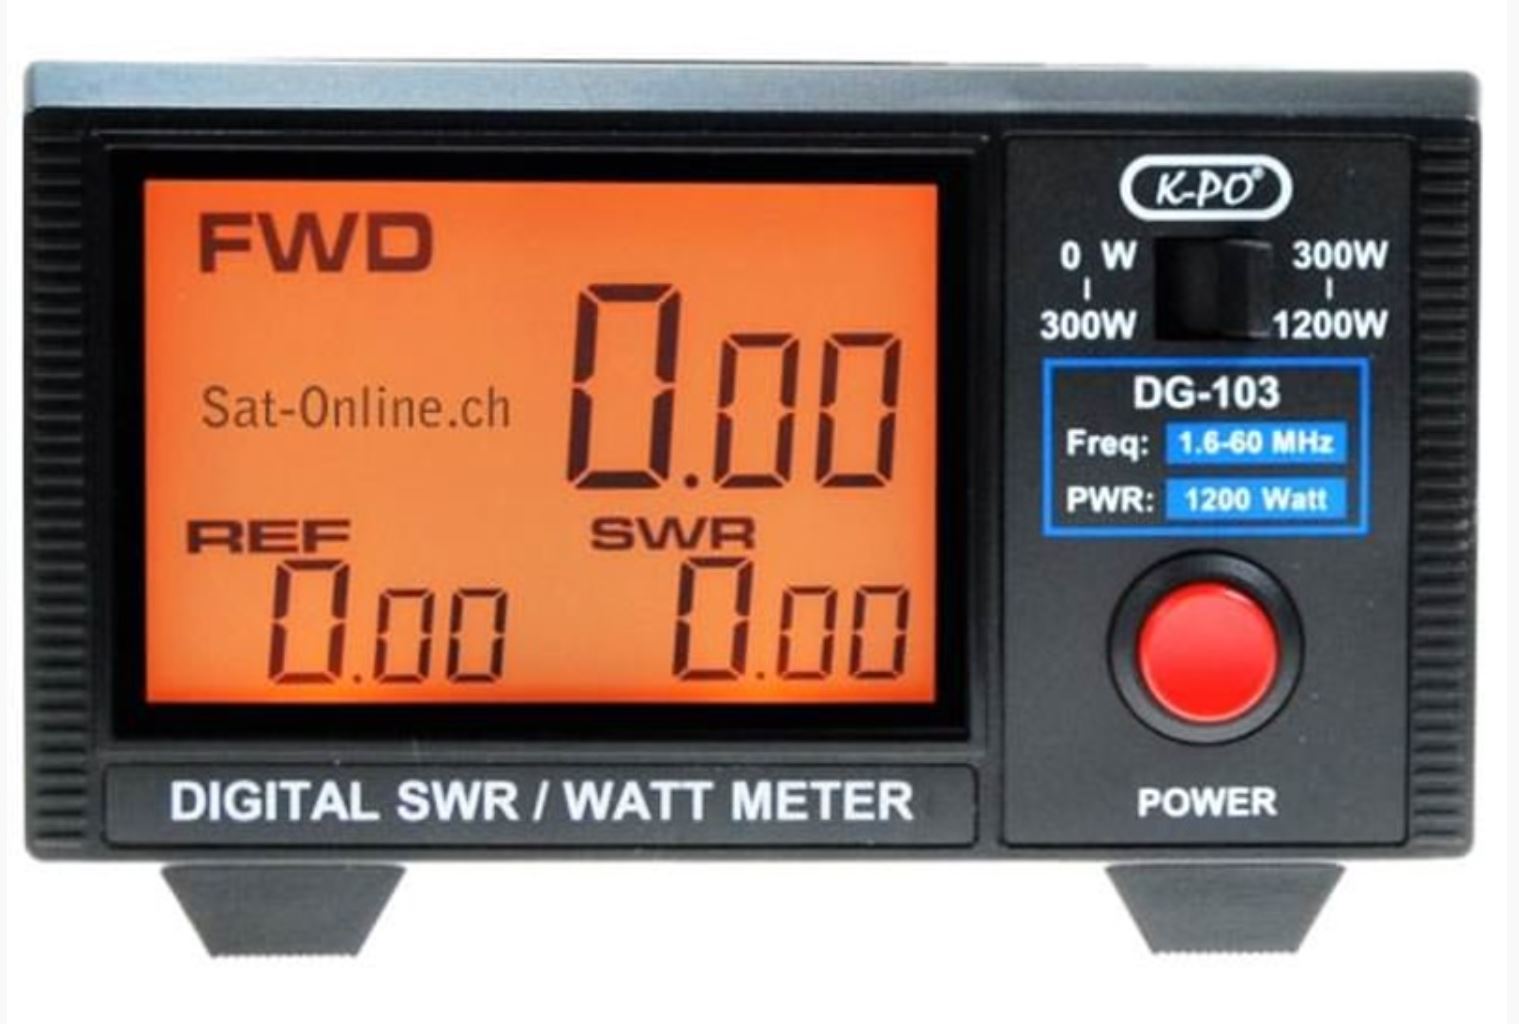 K-PO SWR digital DG-103